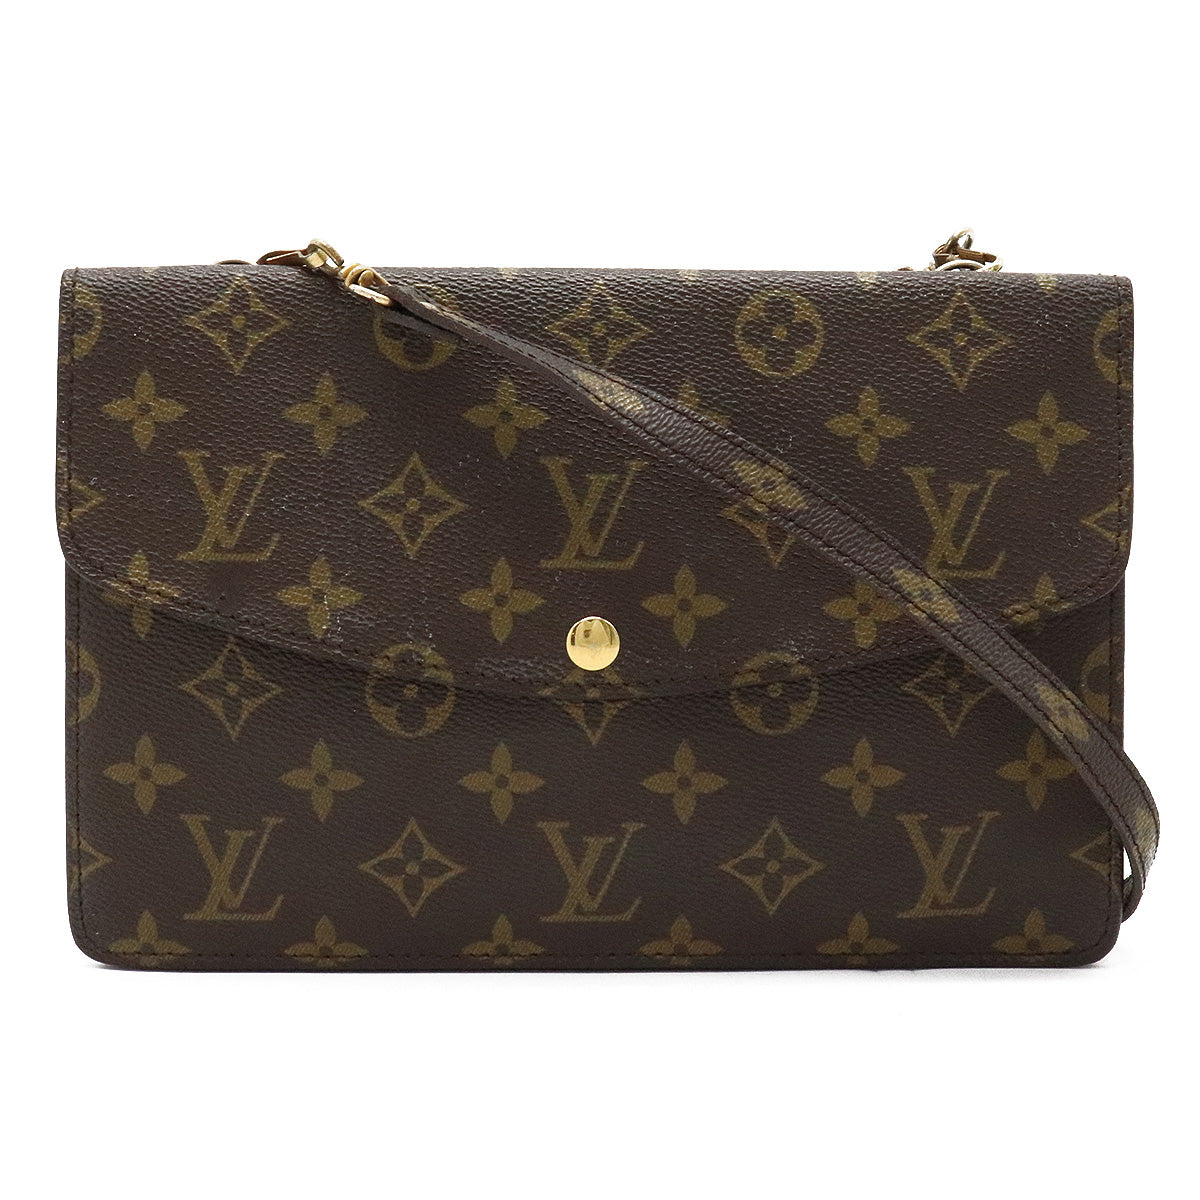 Louis Vuitton Limited Edition Monogram Etoile City PM Bag